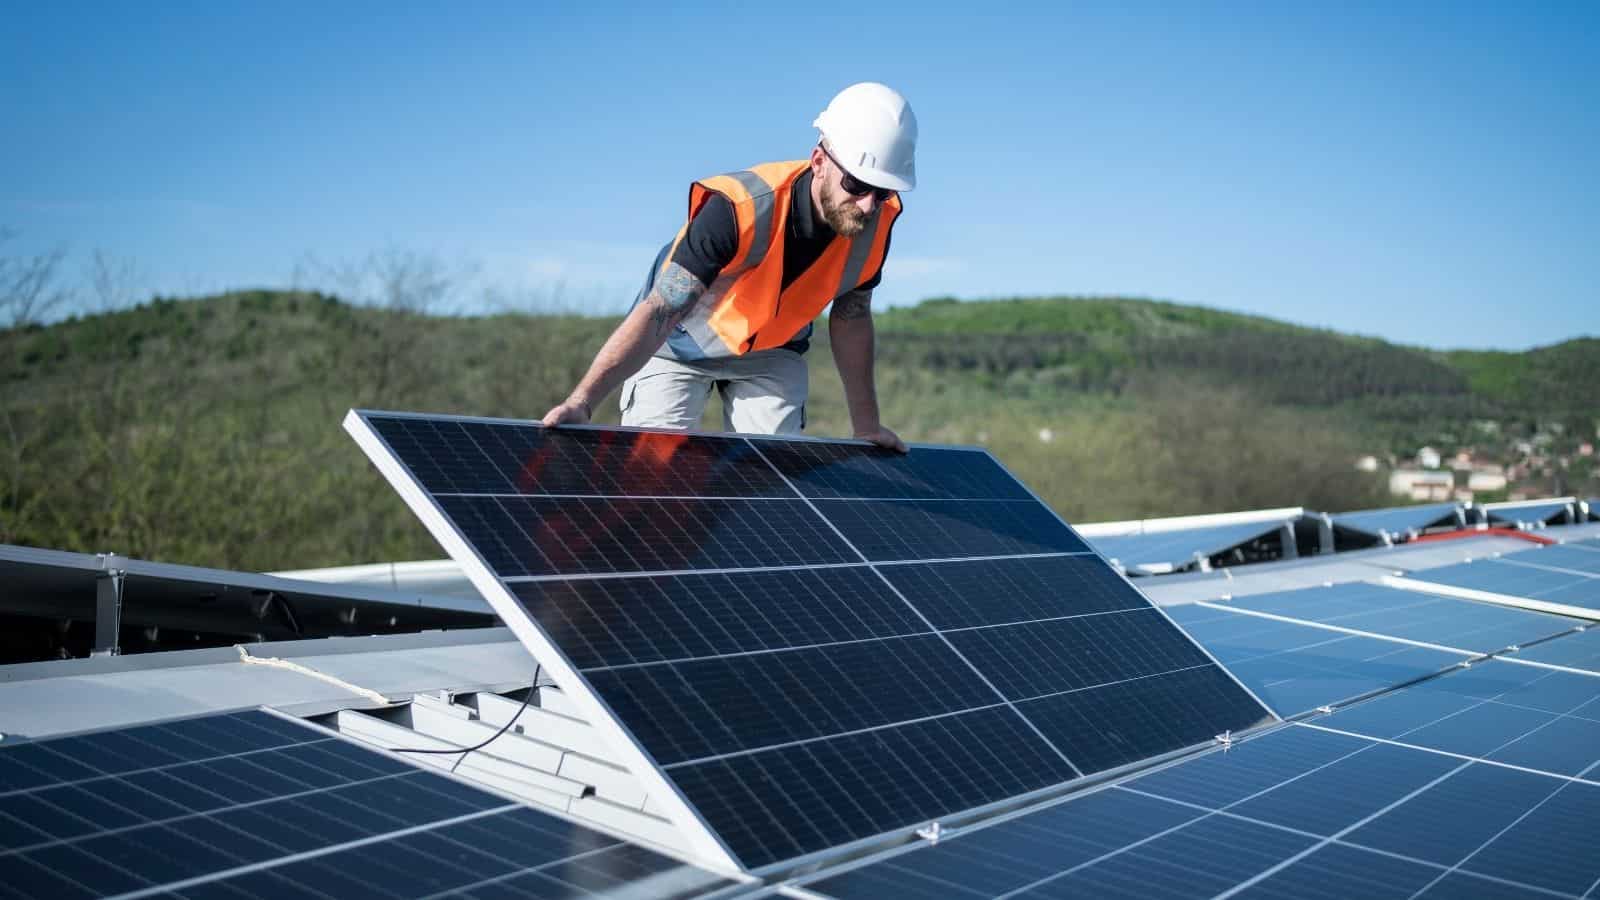  Il Fotovoltaico avanza: Oxford PV raggiunge alti livelli di efficienza